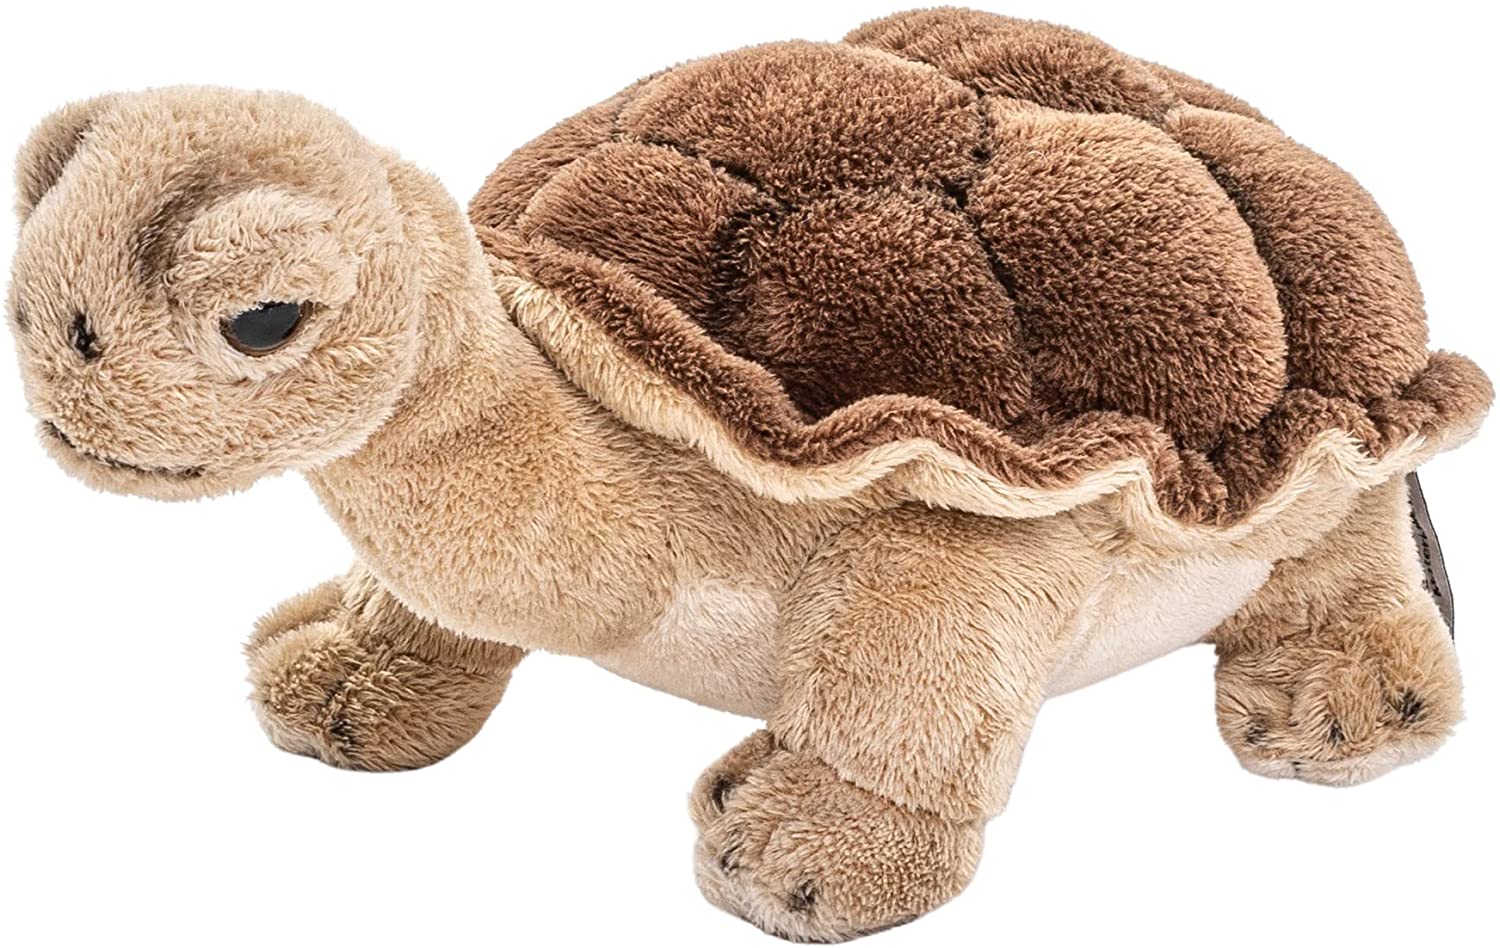 Uni-Toys - Landschildkröte, groß - 28 cm (Länge) - Plüsch-Schildkröte - Plüschtier, Kuscheltier 